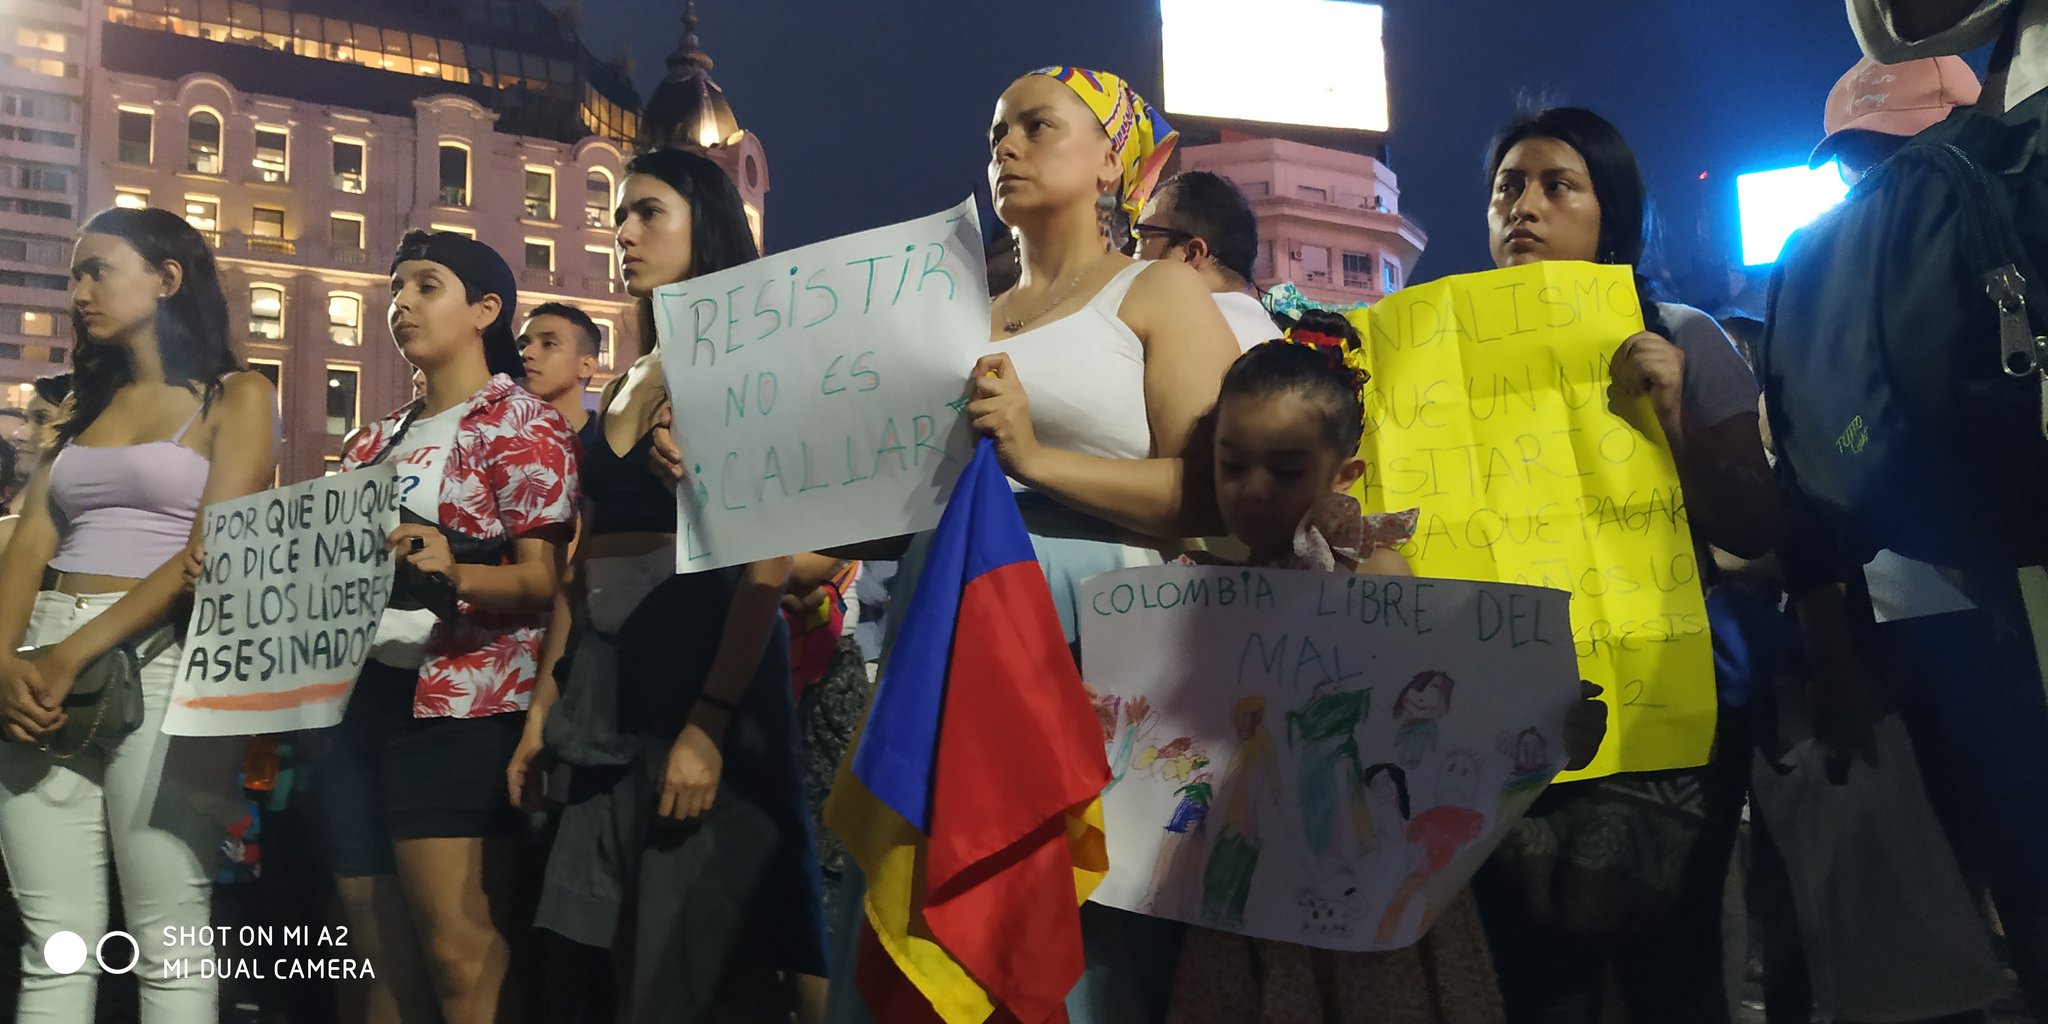 5-puntos-entender-que-pasa-colombia-protestas-manifestaciones-ivan-duque-paquetazo-02